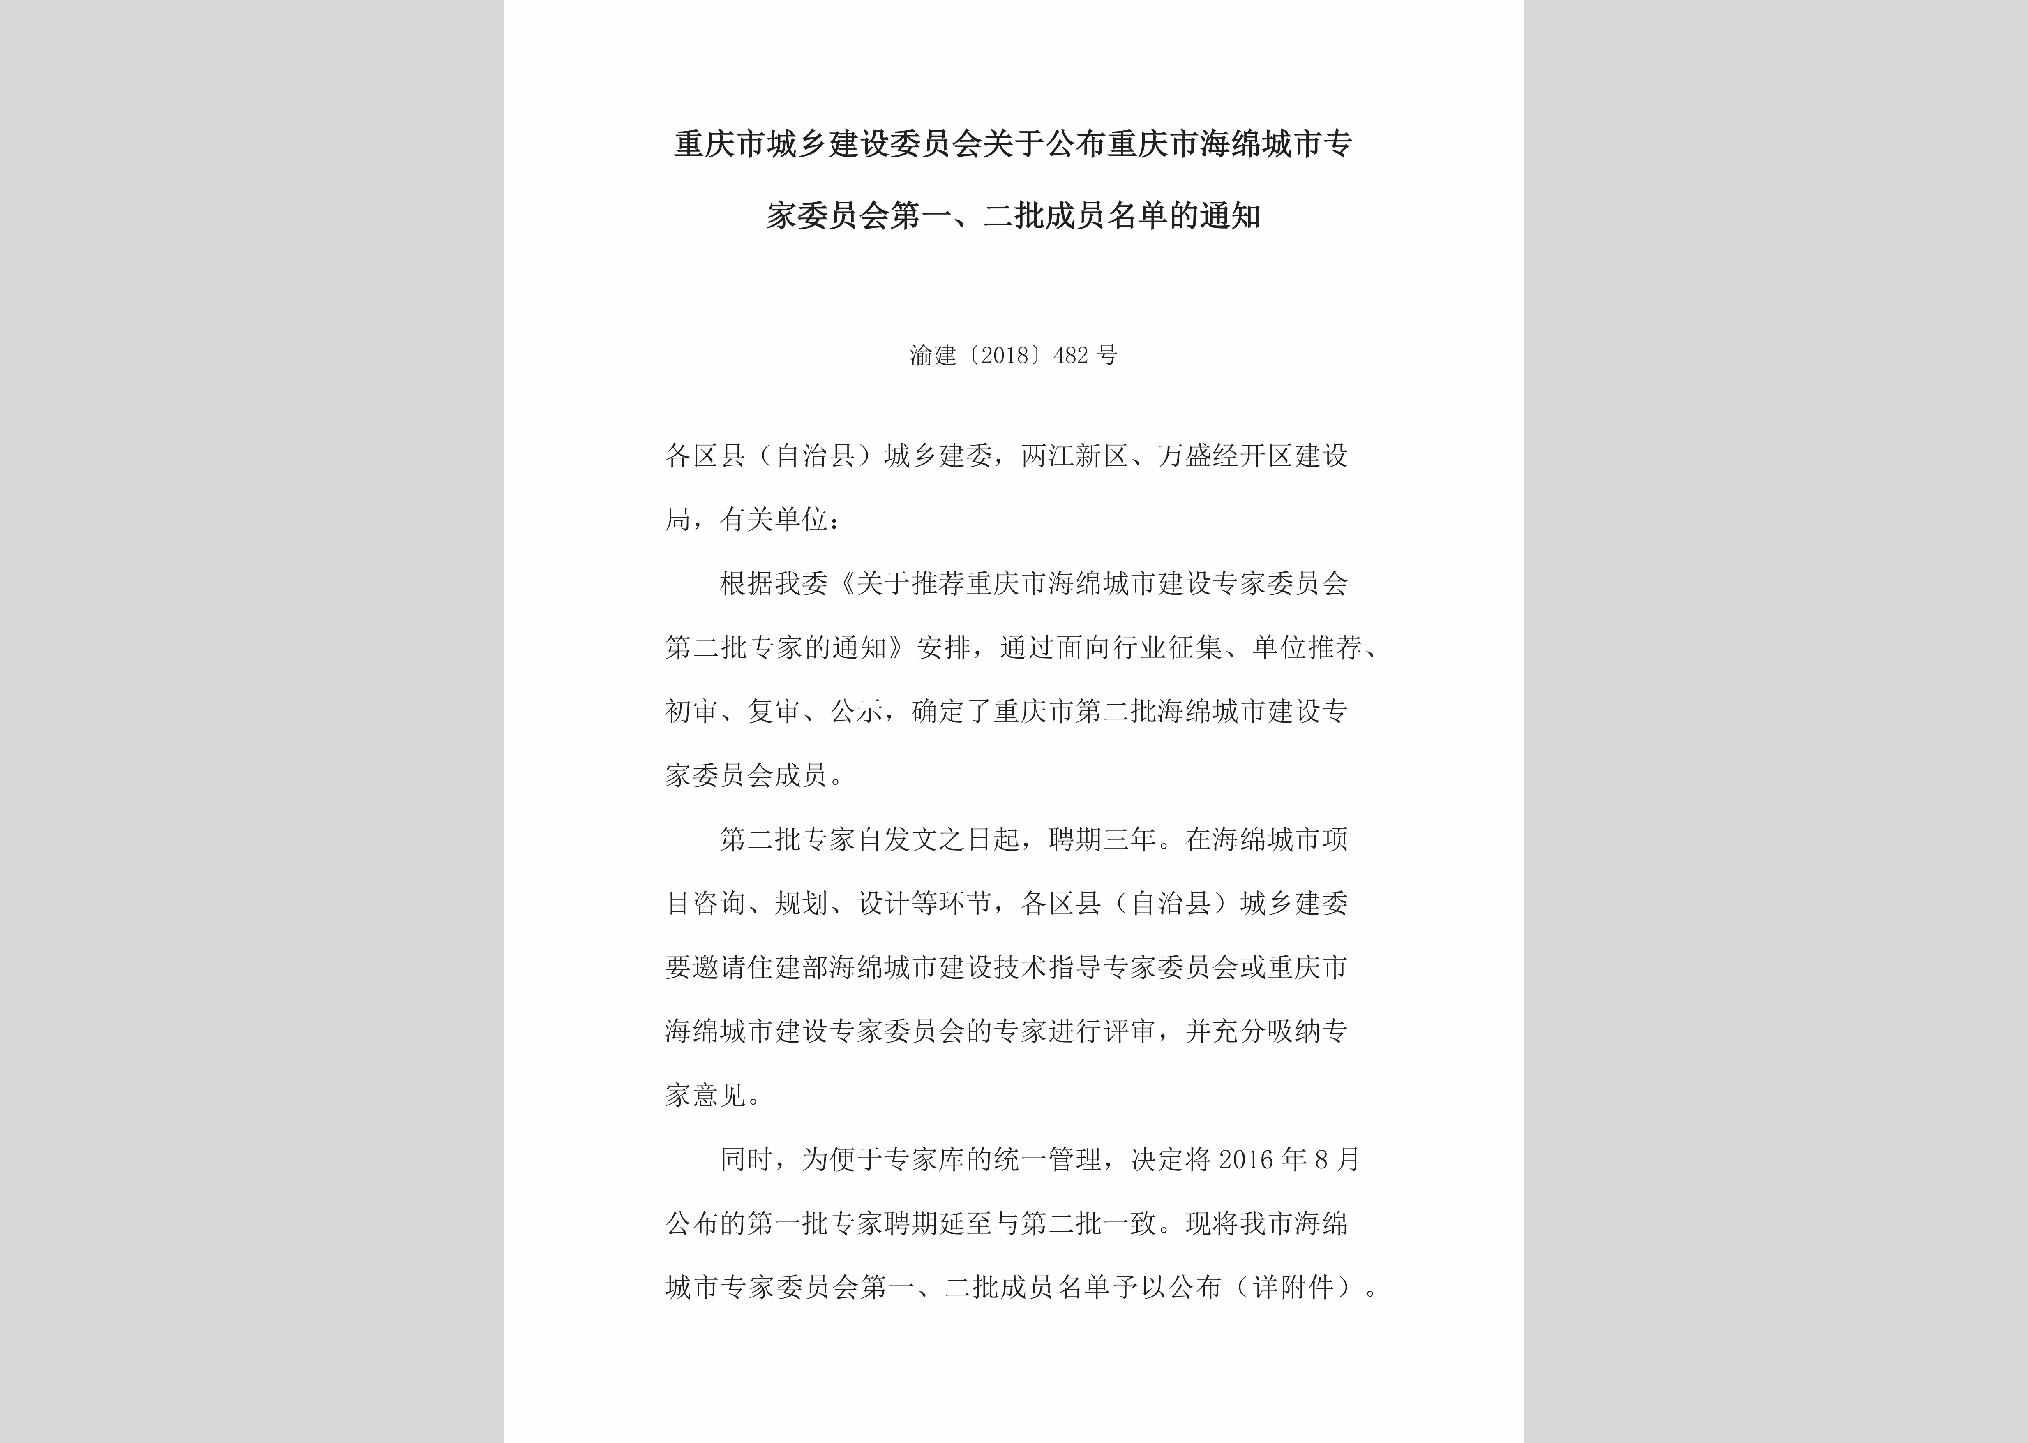 渝建[2018]482号：关于公布重庆市海绵城市专家委员会第一、二批成员名单的通知